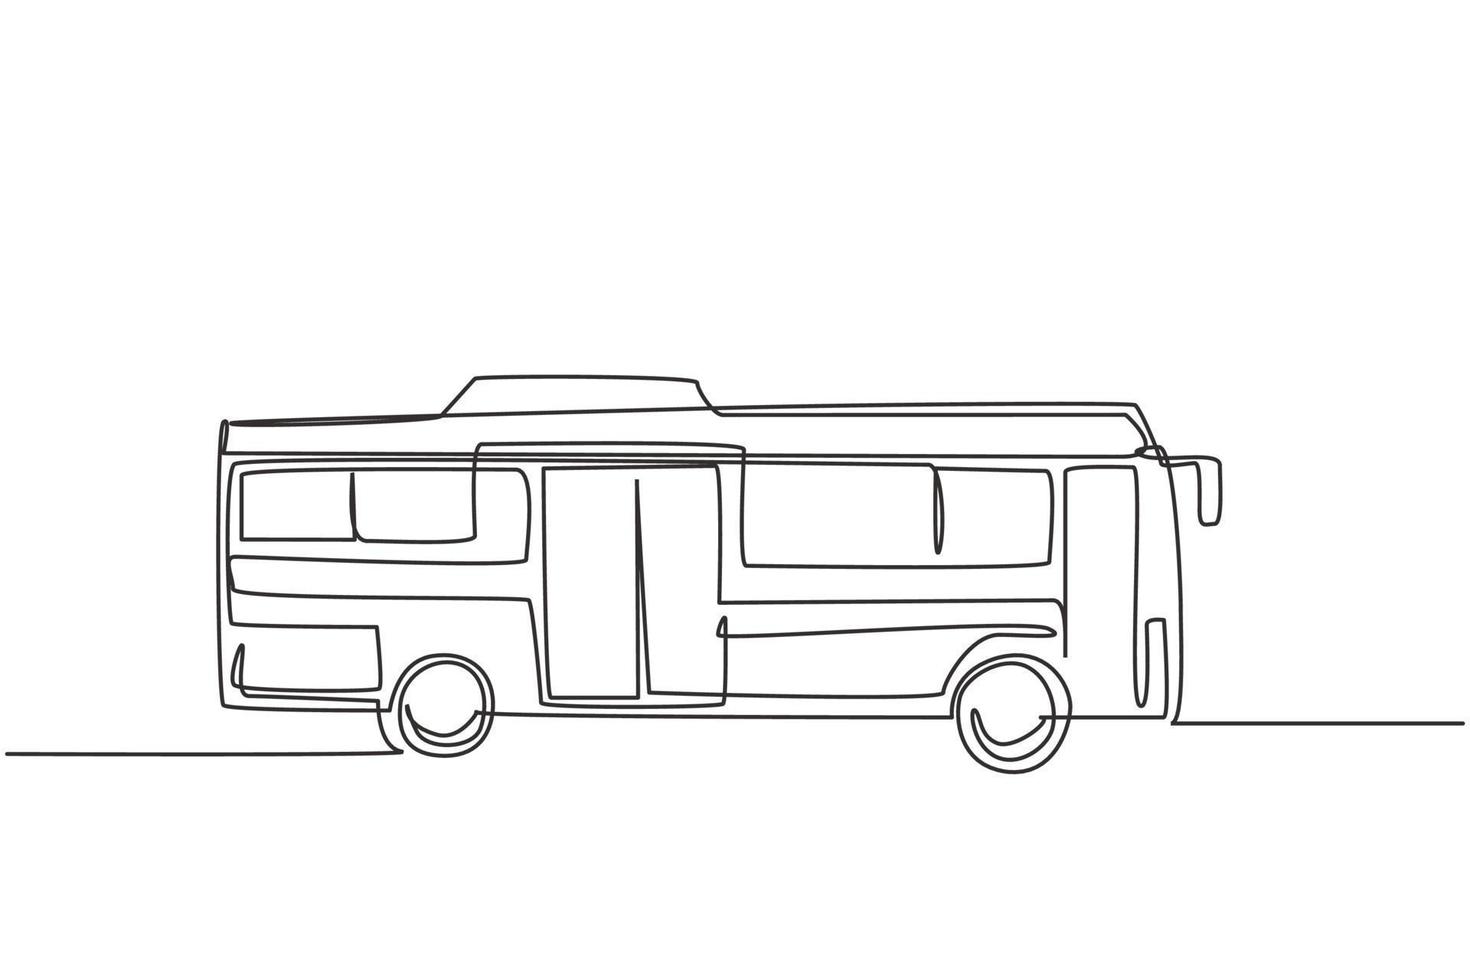 enda en linje ritning av stadsbussar sett från sidan betjänar pendlarpassagerare som avgår och återvänder hemifrån till kontoret. modern kontinuerlig linje rita design grafisk vektor illustration.